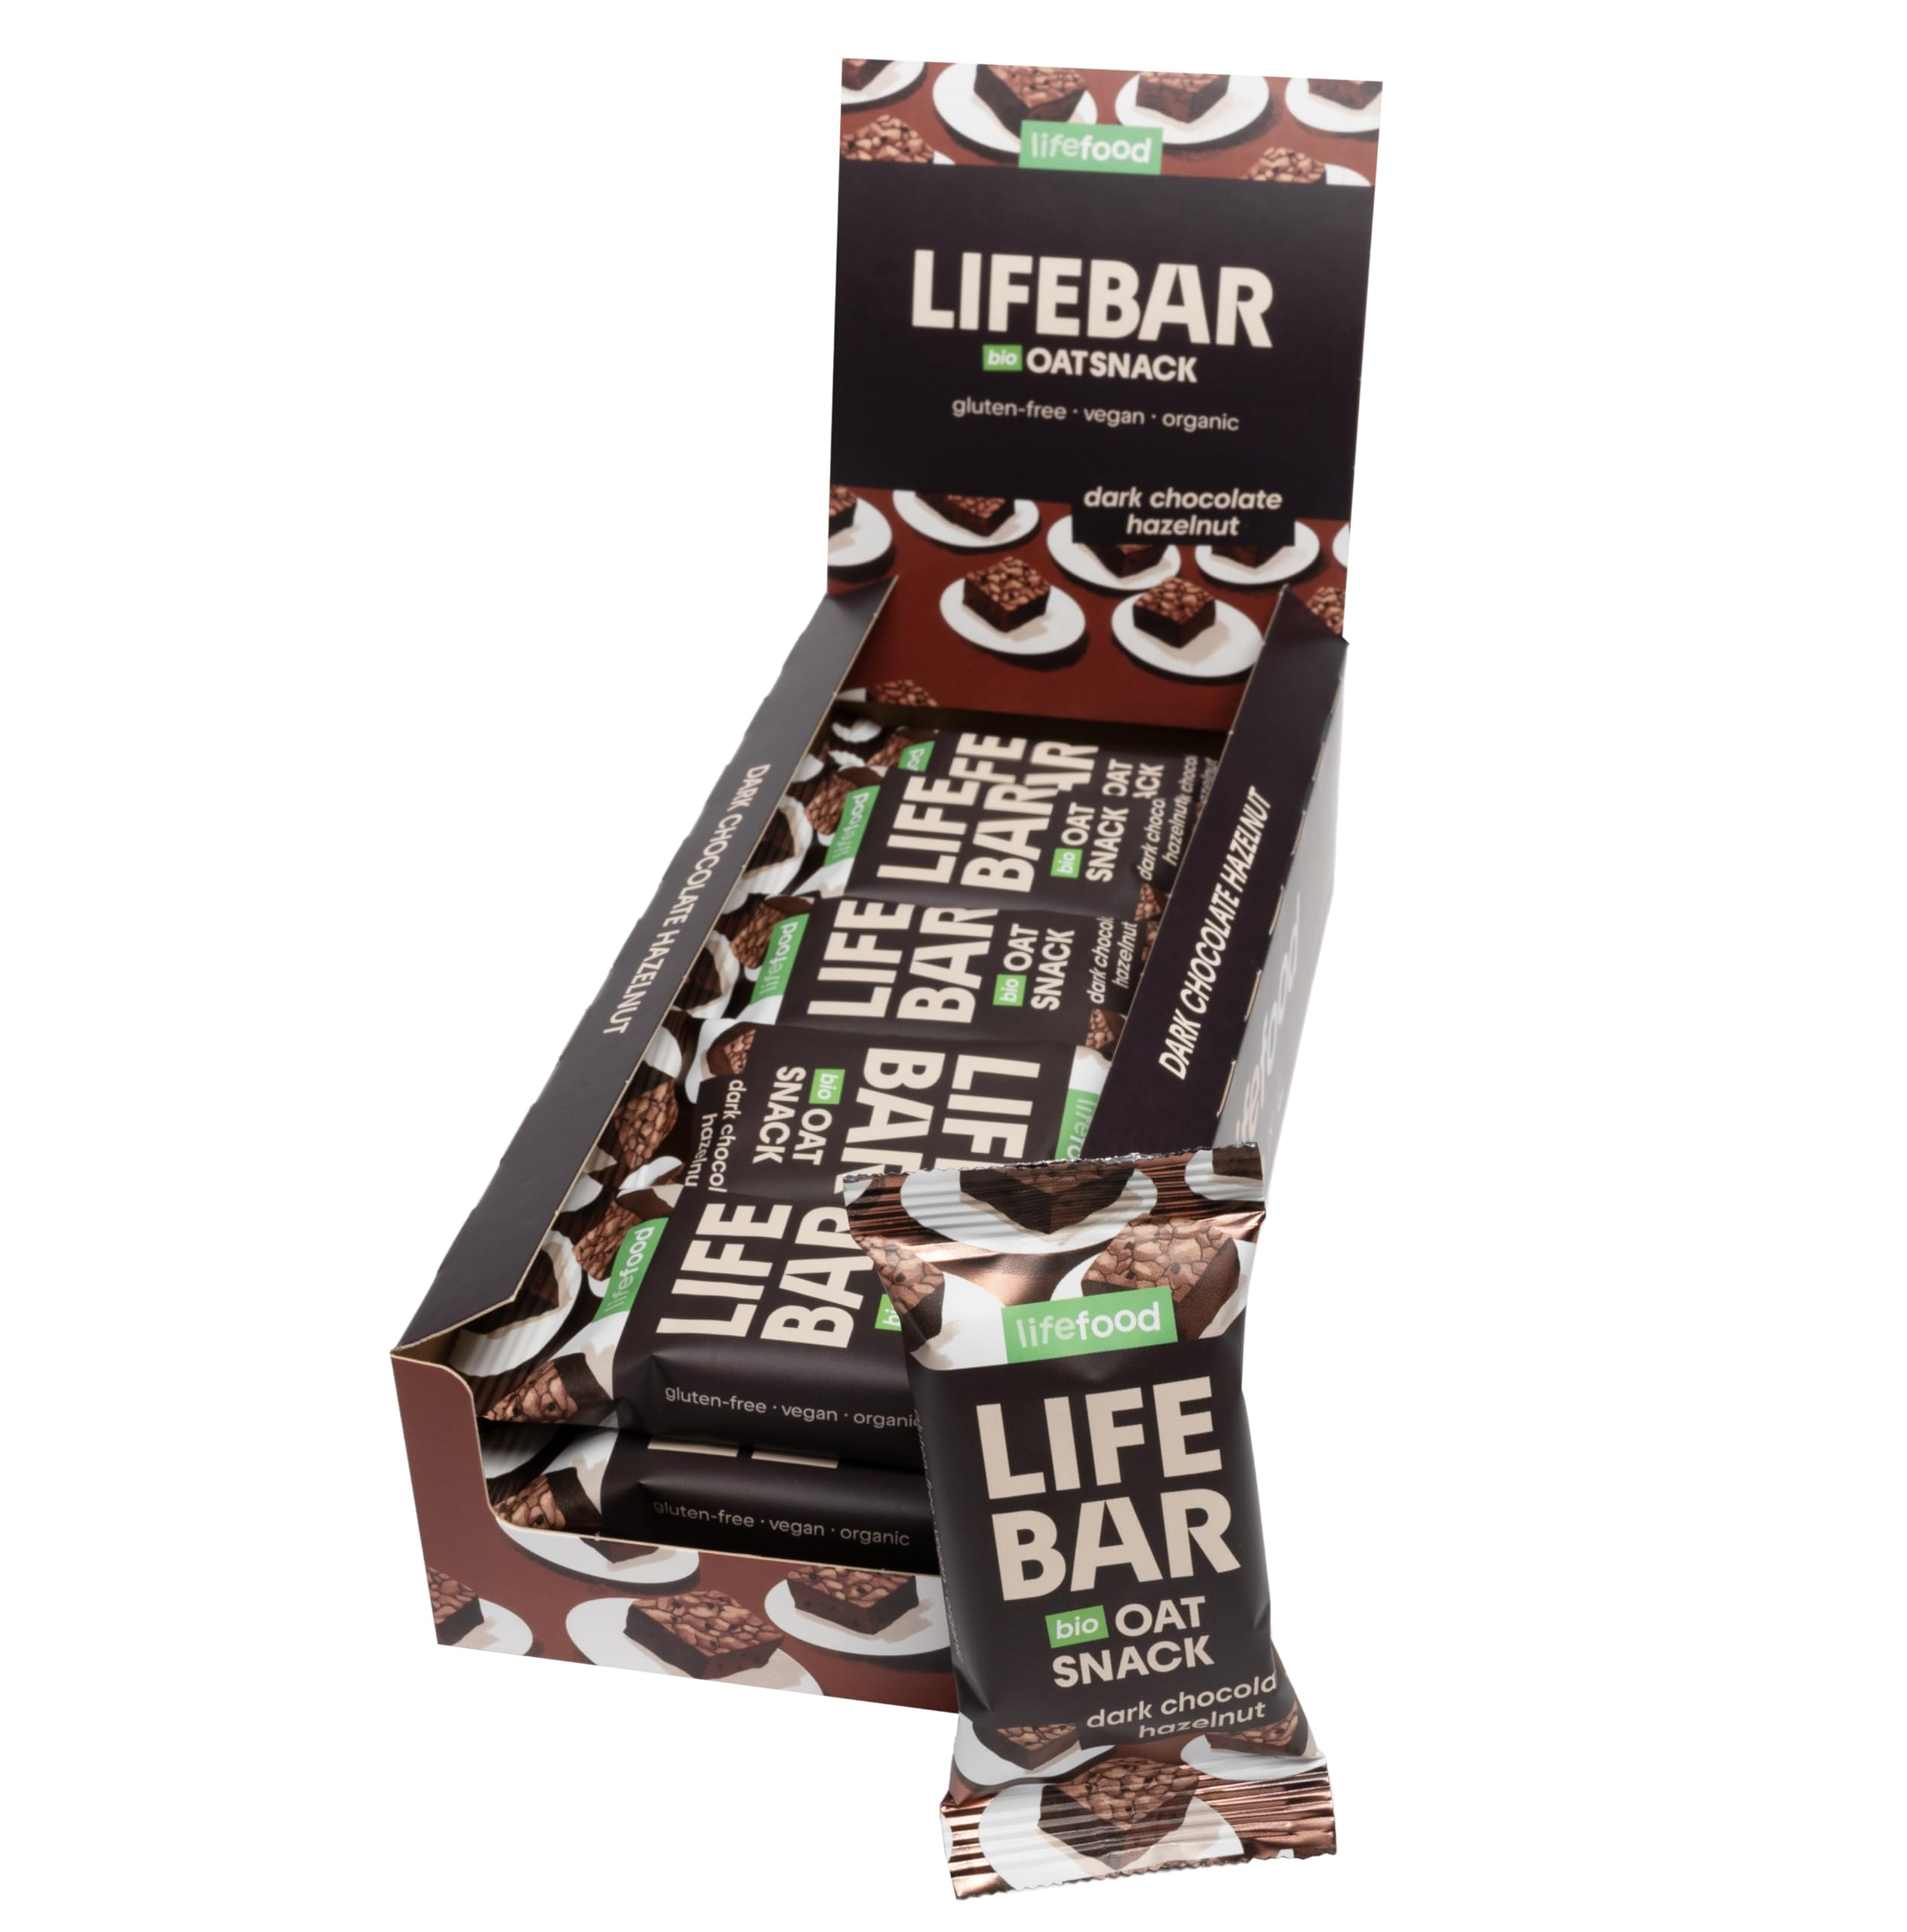 Lifefood Lifebar Haferriegel, Hafer Riegel, Haferflocken Riegel, Hafer Snack BIO Vegan Lactosefrei Glutenfrei - 15er Pack (15 x 40 g) (Dunkle Schokolade Haselnuss)